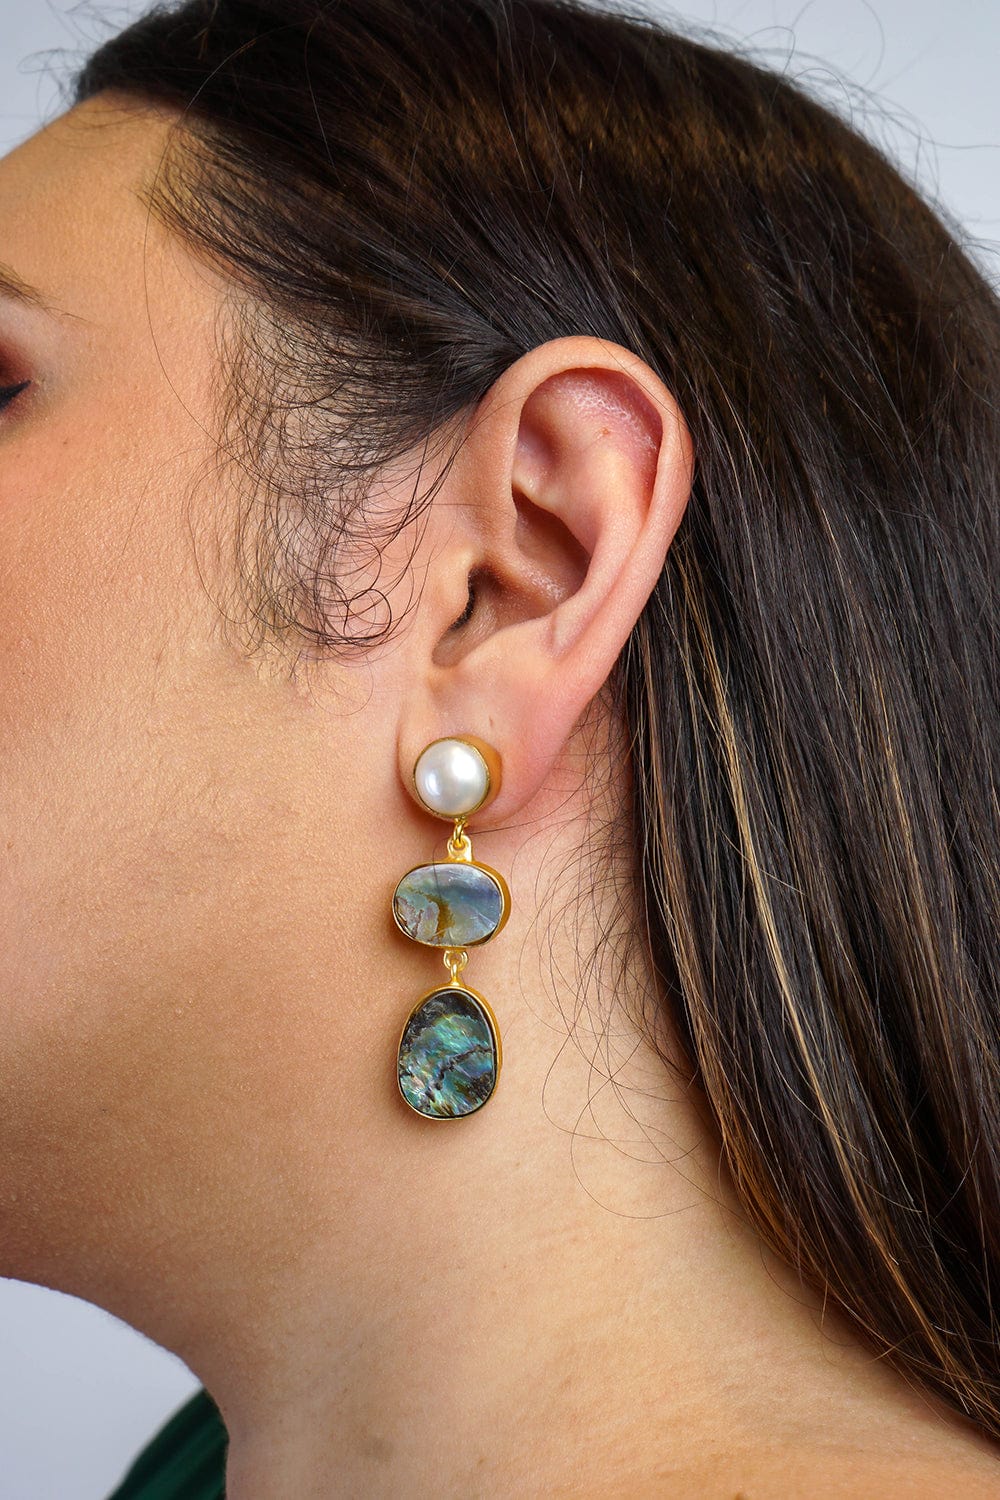 DCD EARRINGS Pearl Stud Australian Abalone Shell 3 Tier Earrings